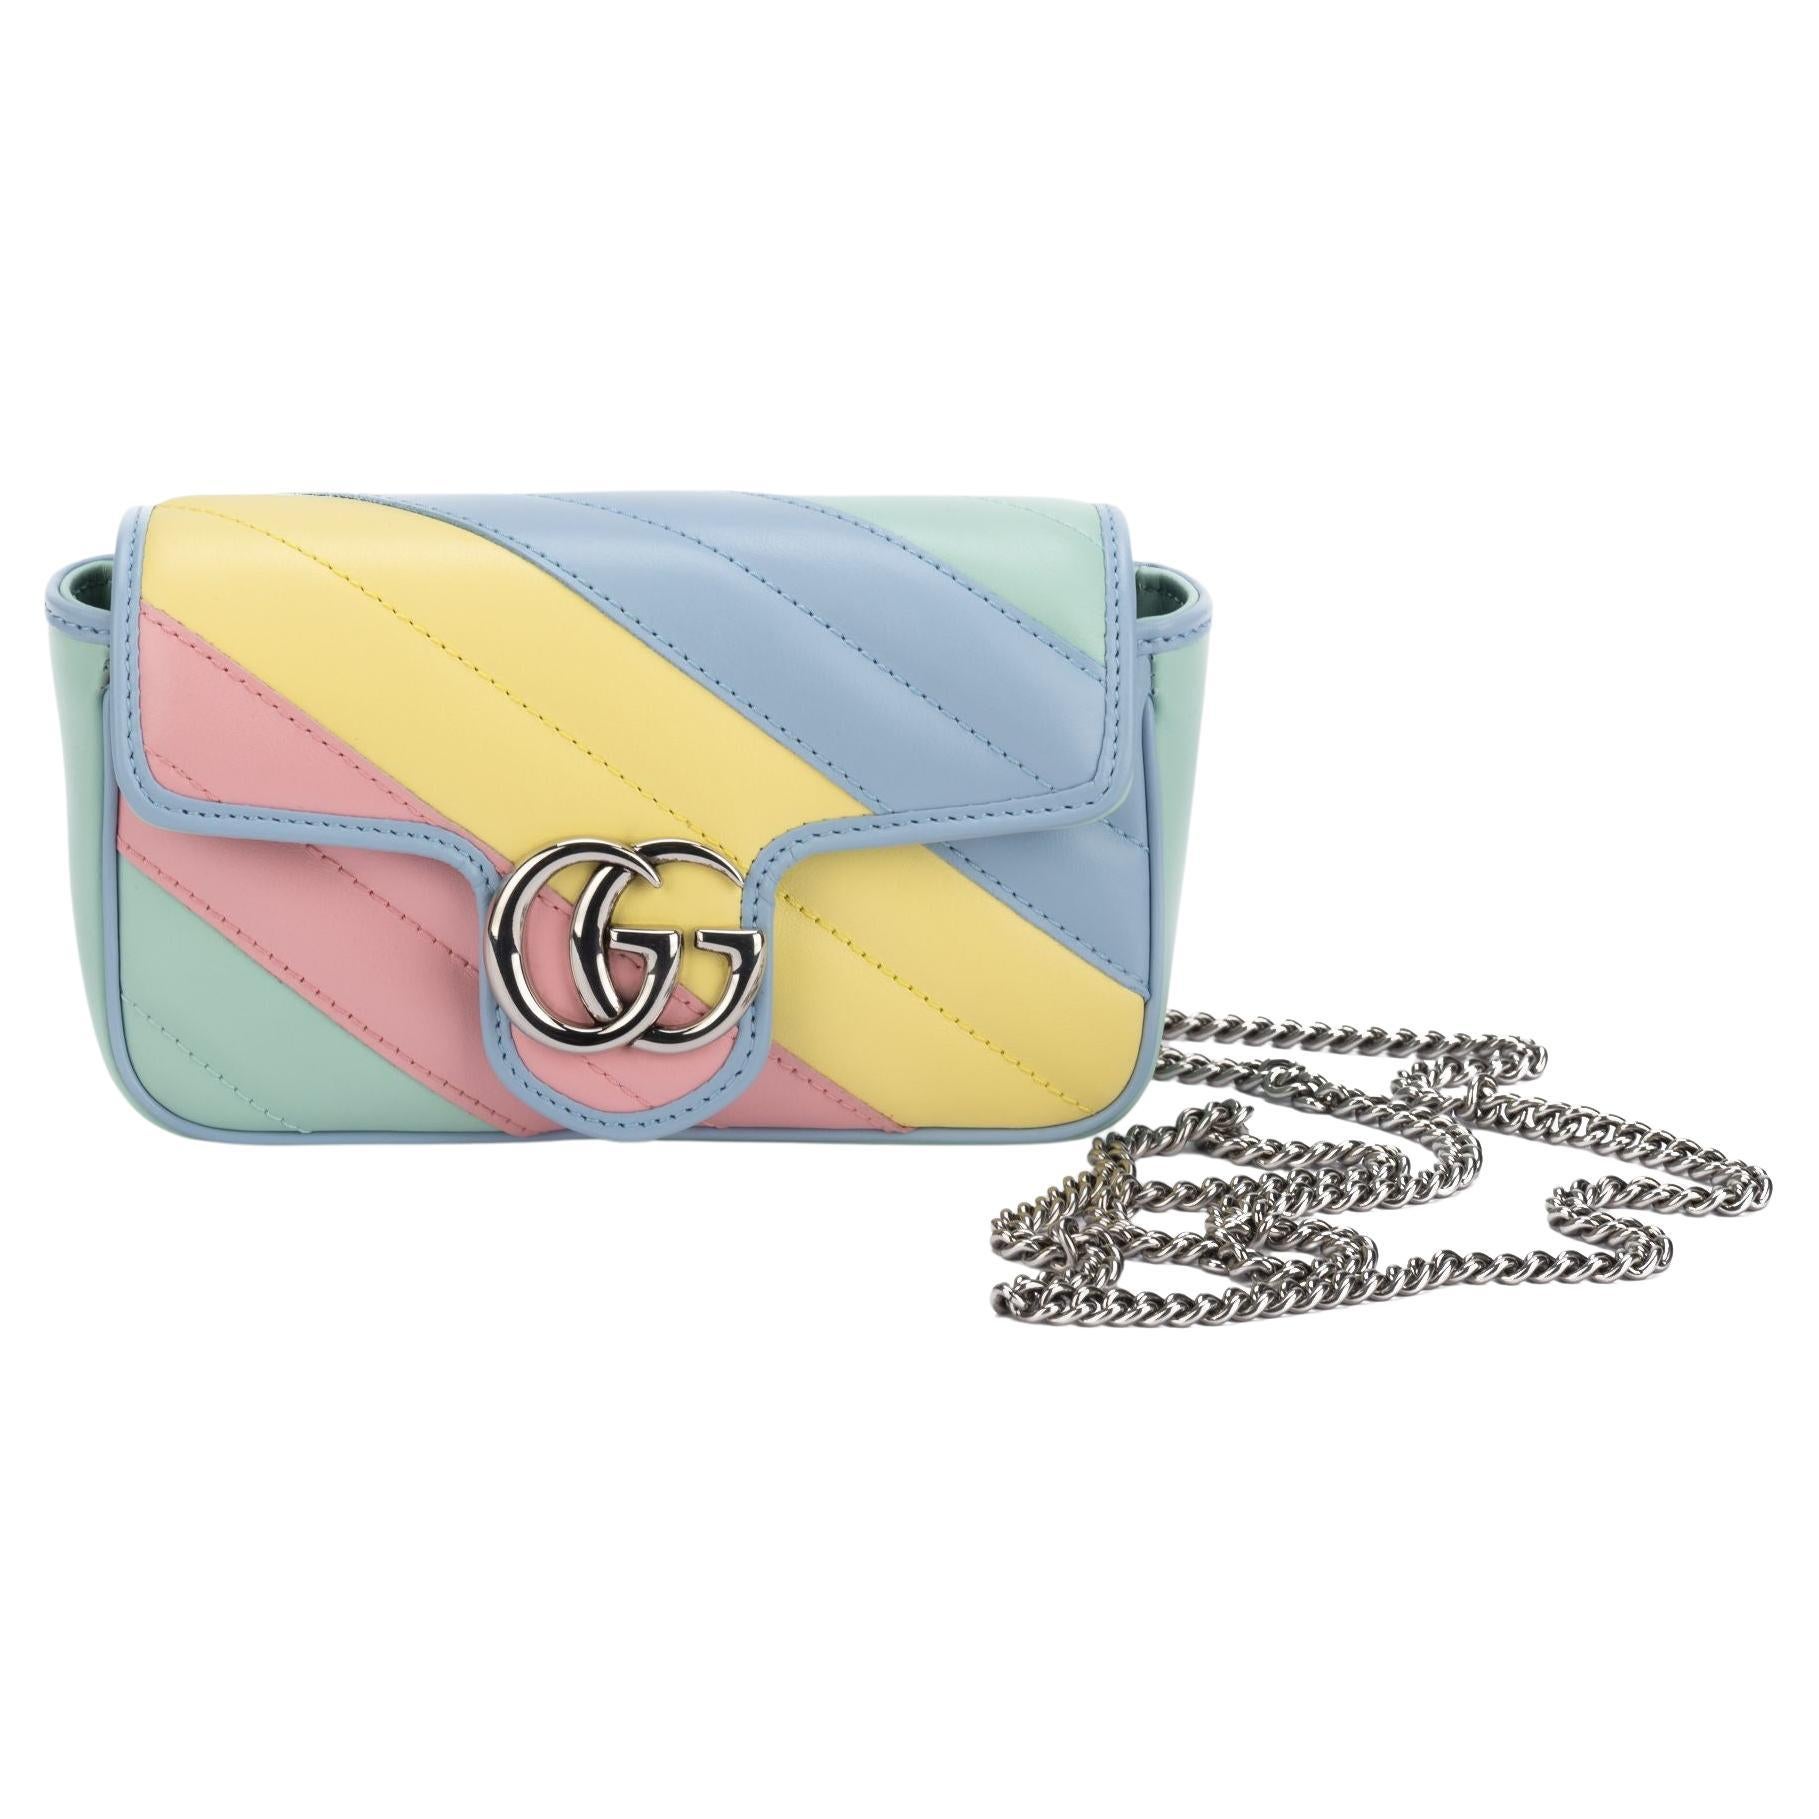 Gucci NIB Lim. Ed. Rainbow Marmont Bag